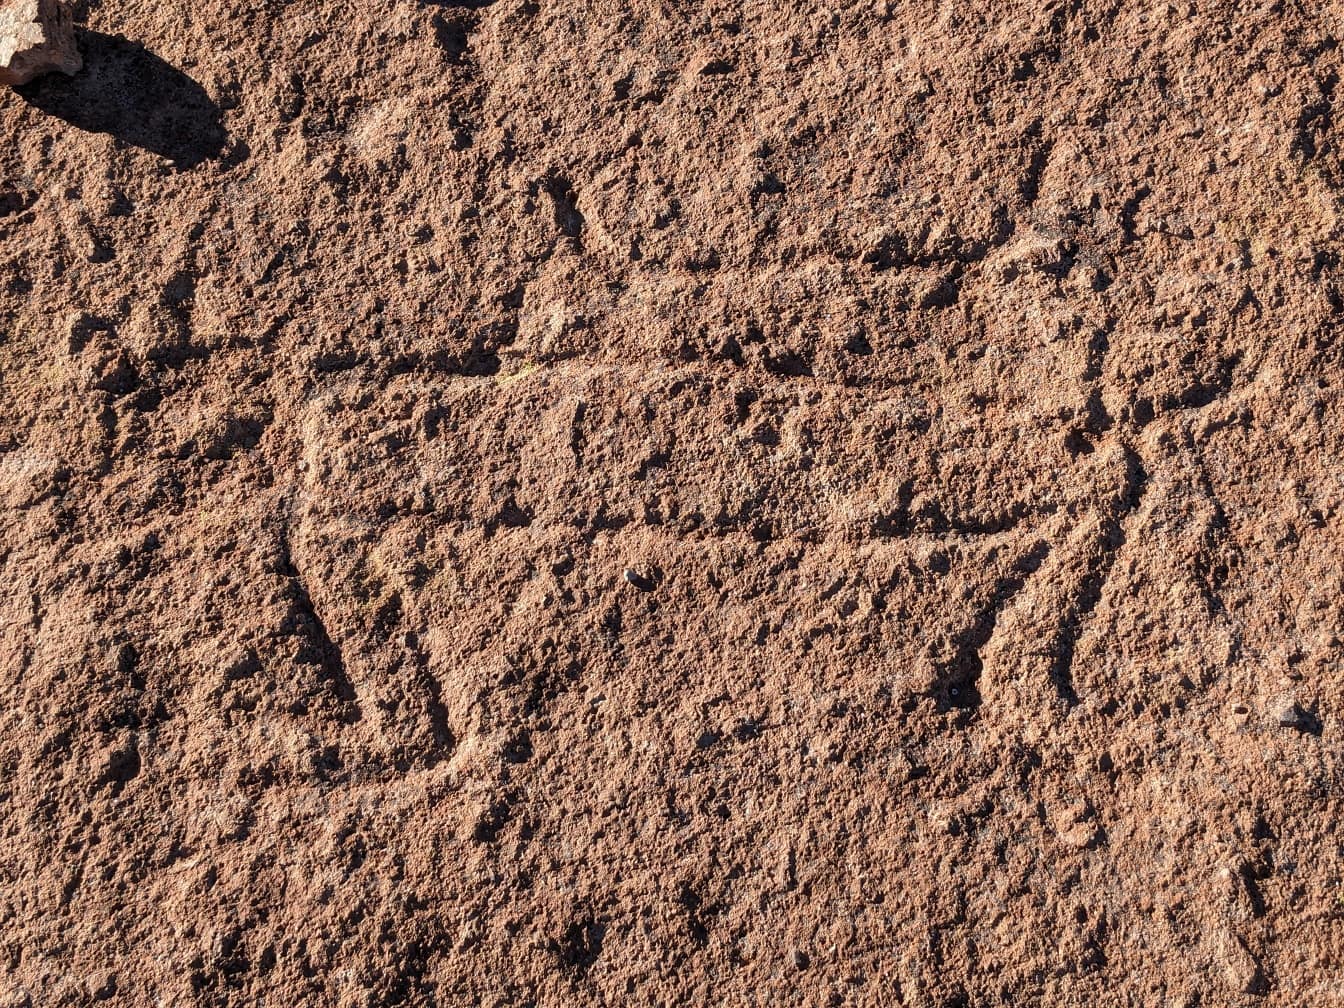 Staroveké petroglyfy, skalné rytiny v Južnej Amerike sa datujú do prehistorického obdobia